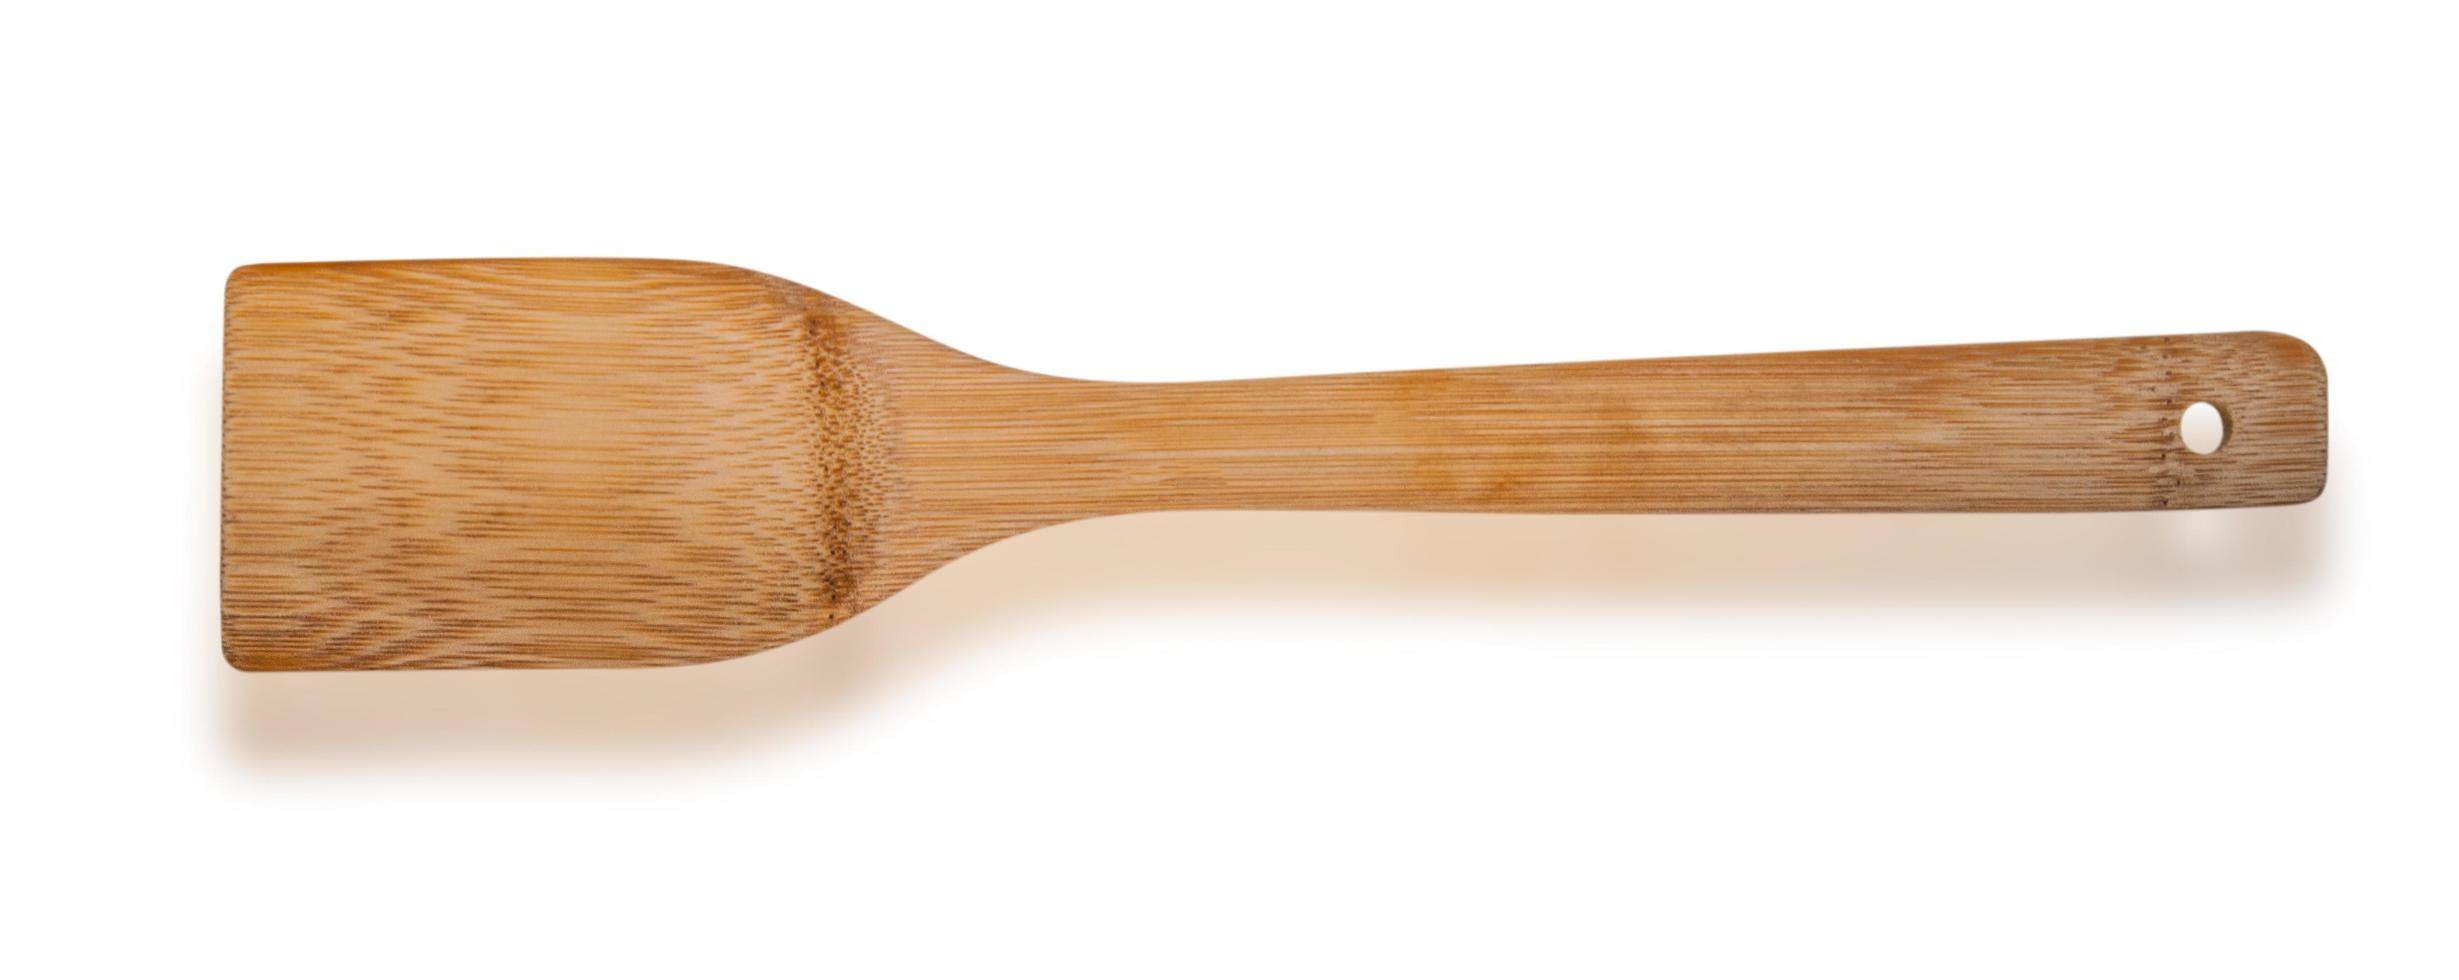 Wooden kitchen spatula isolated on white photo